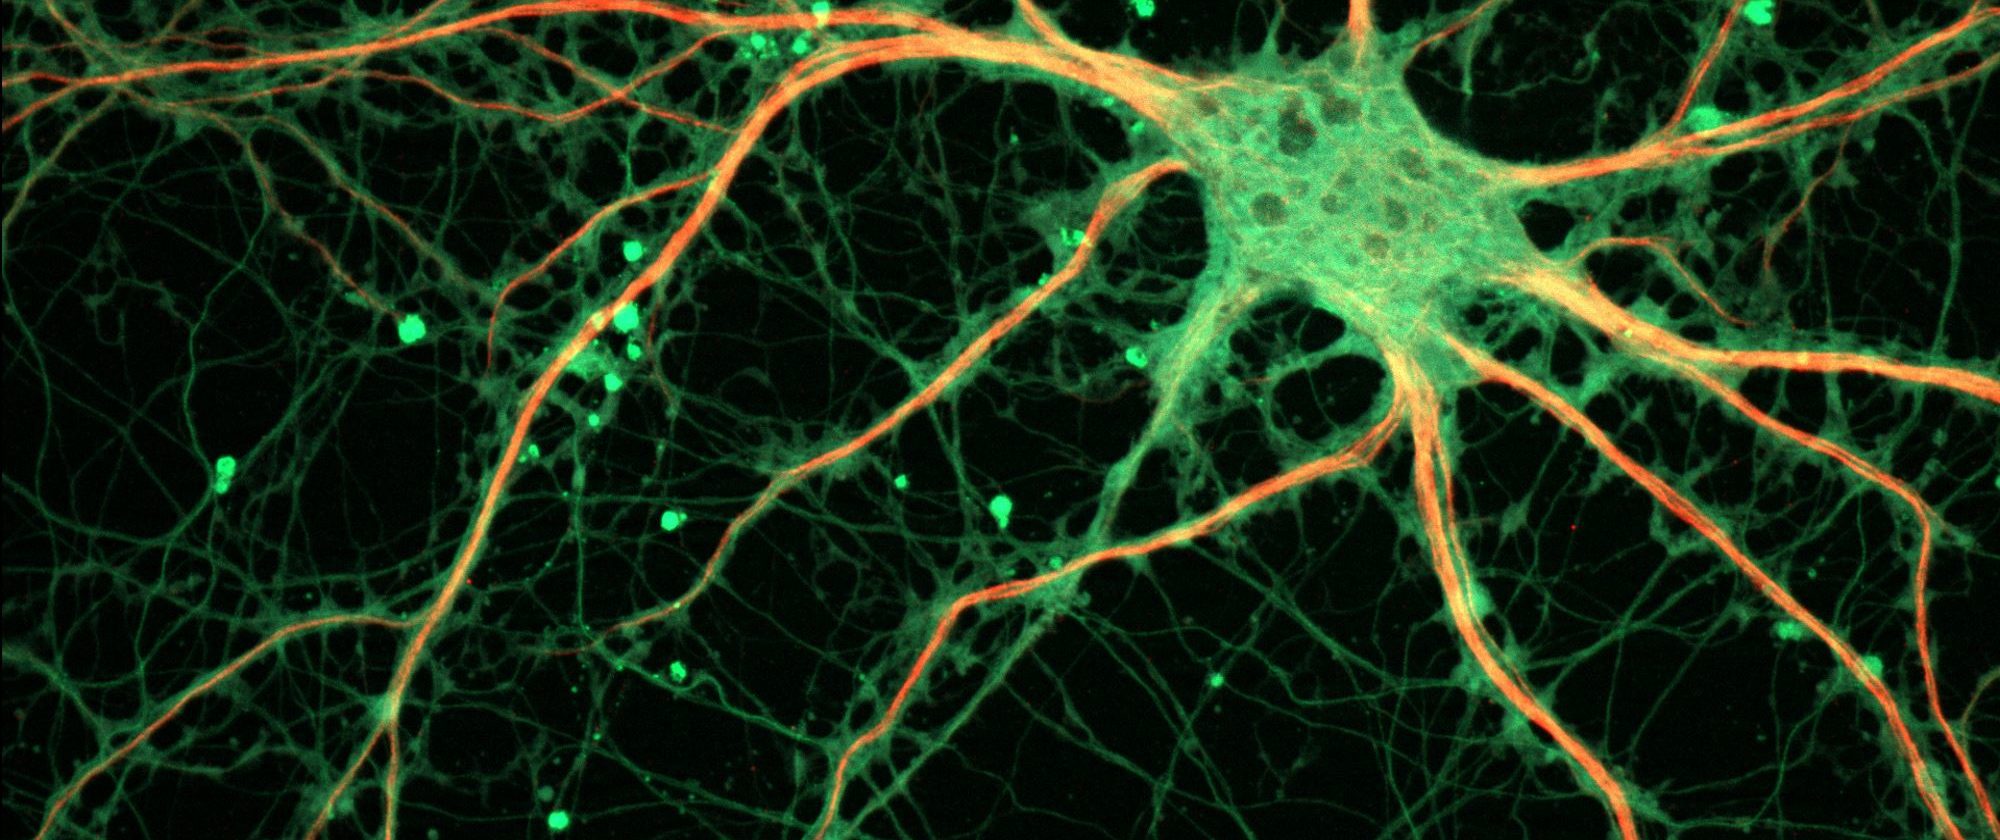 Els canals iònics juguen un paper essencial en les sinapsis. Sense aquests canals, el sistema nerviós no seria capaç d’enviar i rebre senyals. (Imatge de ZEISS Microscopy a Viquipèdia)